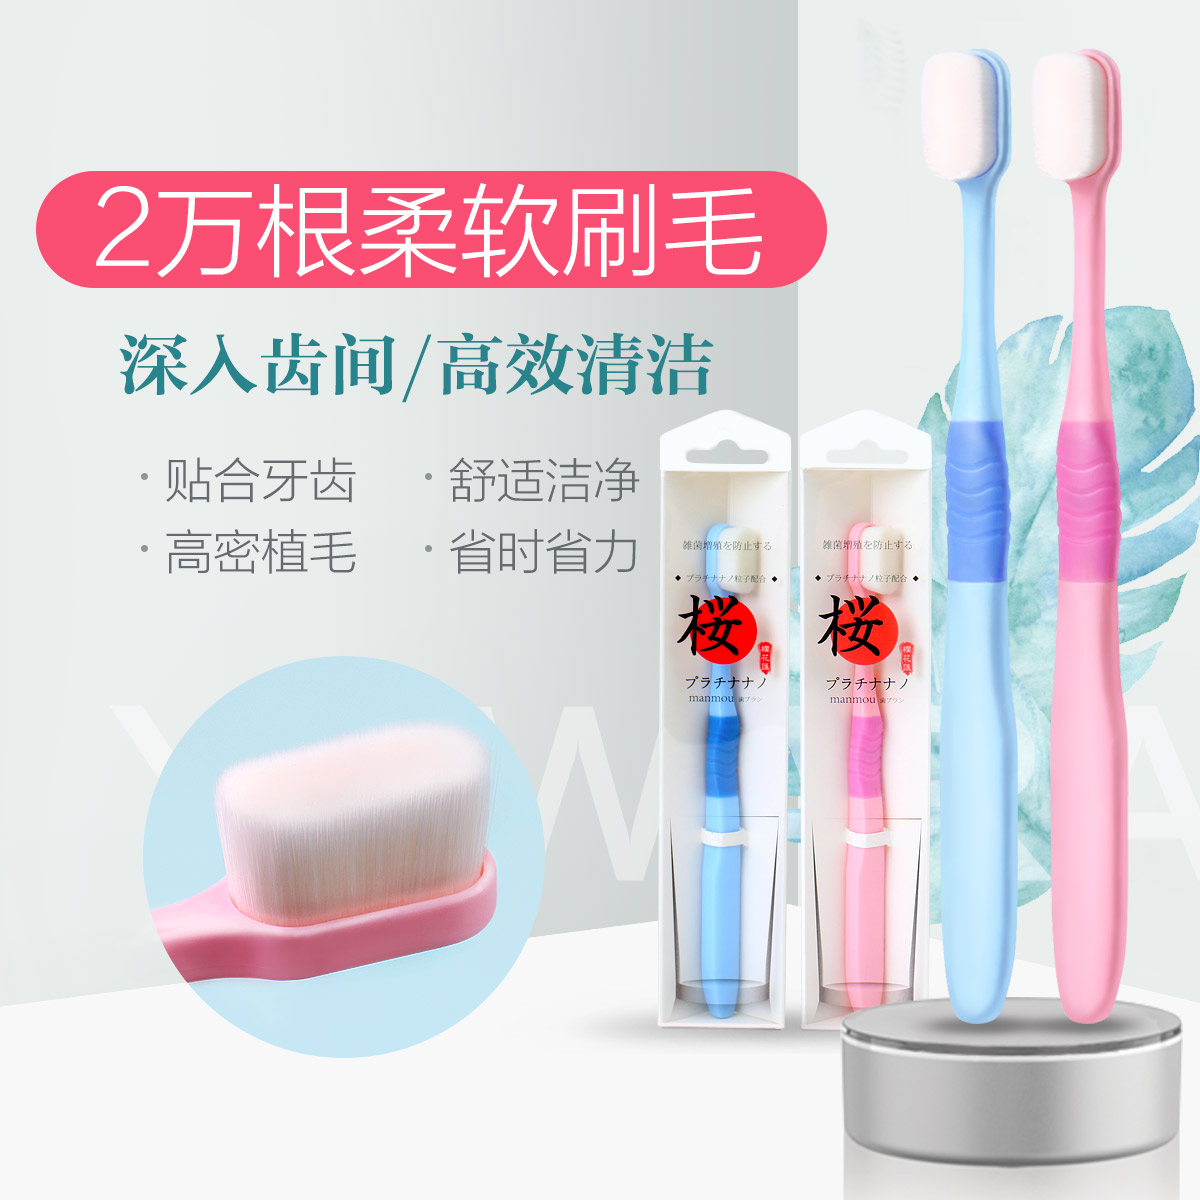 【2支装】日本进口万毛牙刷成人超软毛男女式情侣护理牙龈送牙膏